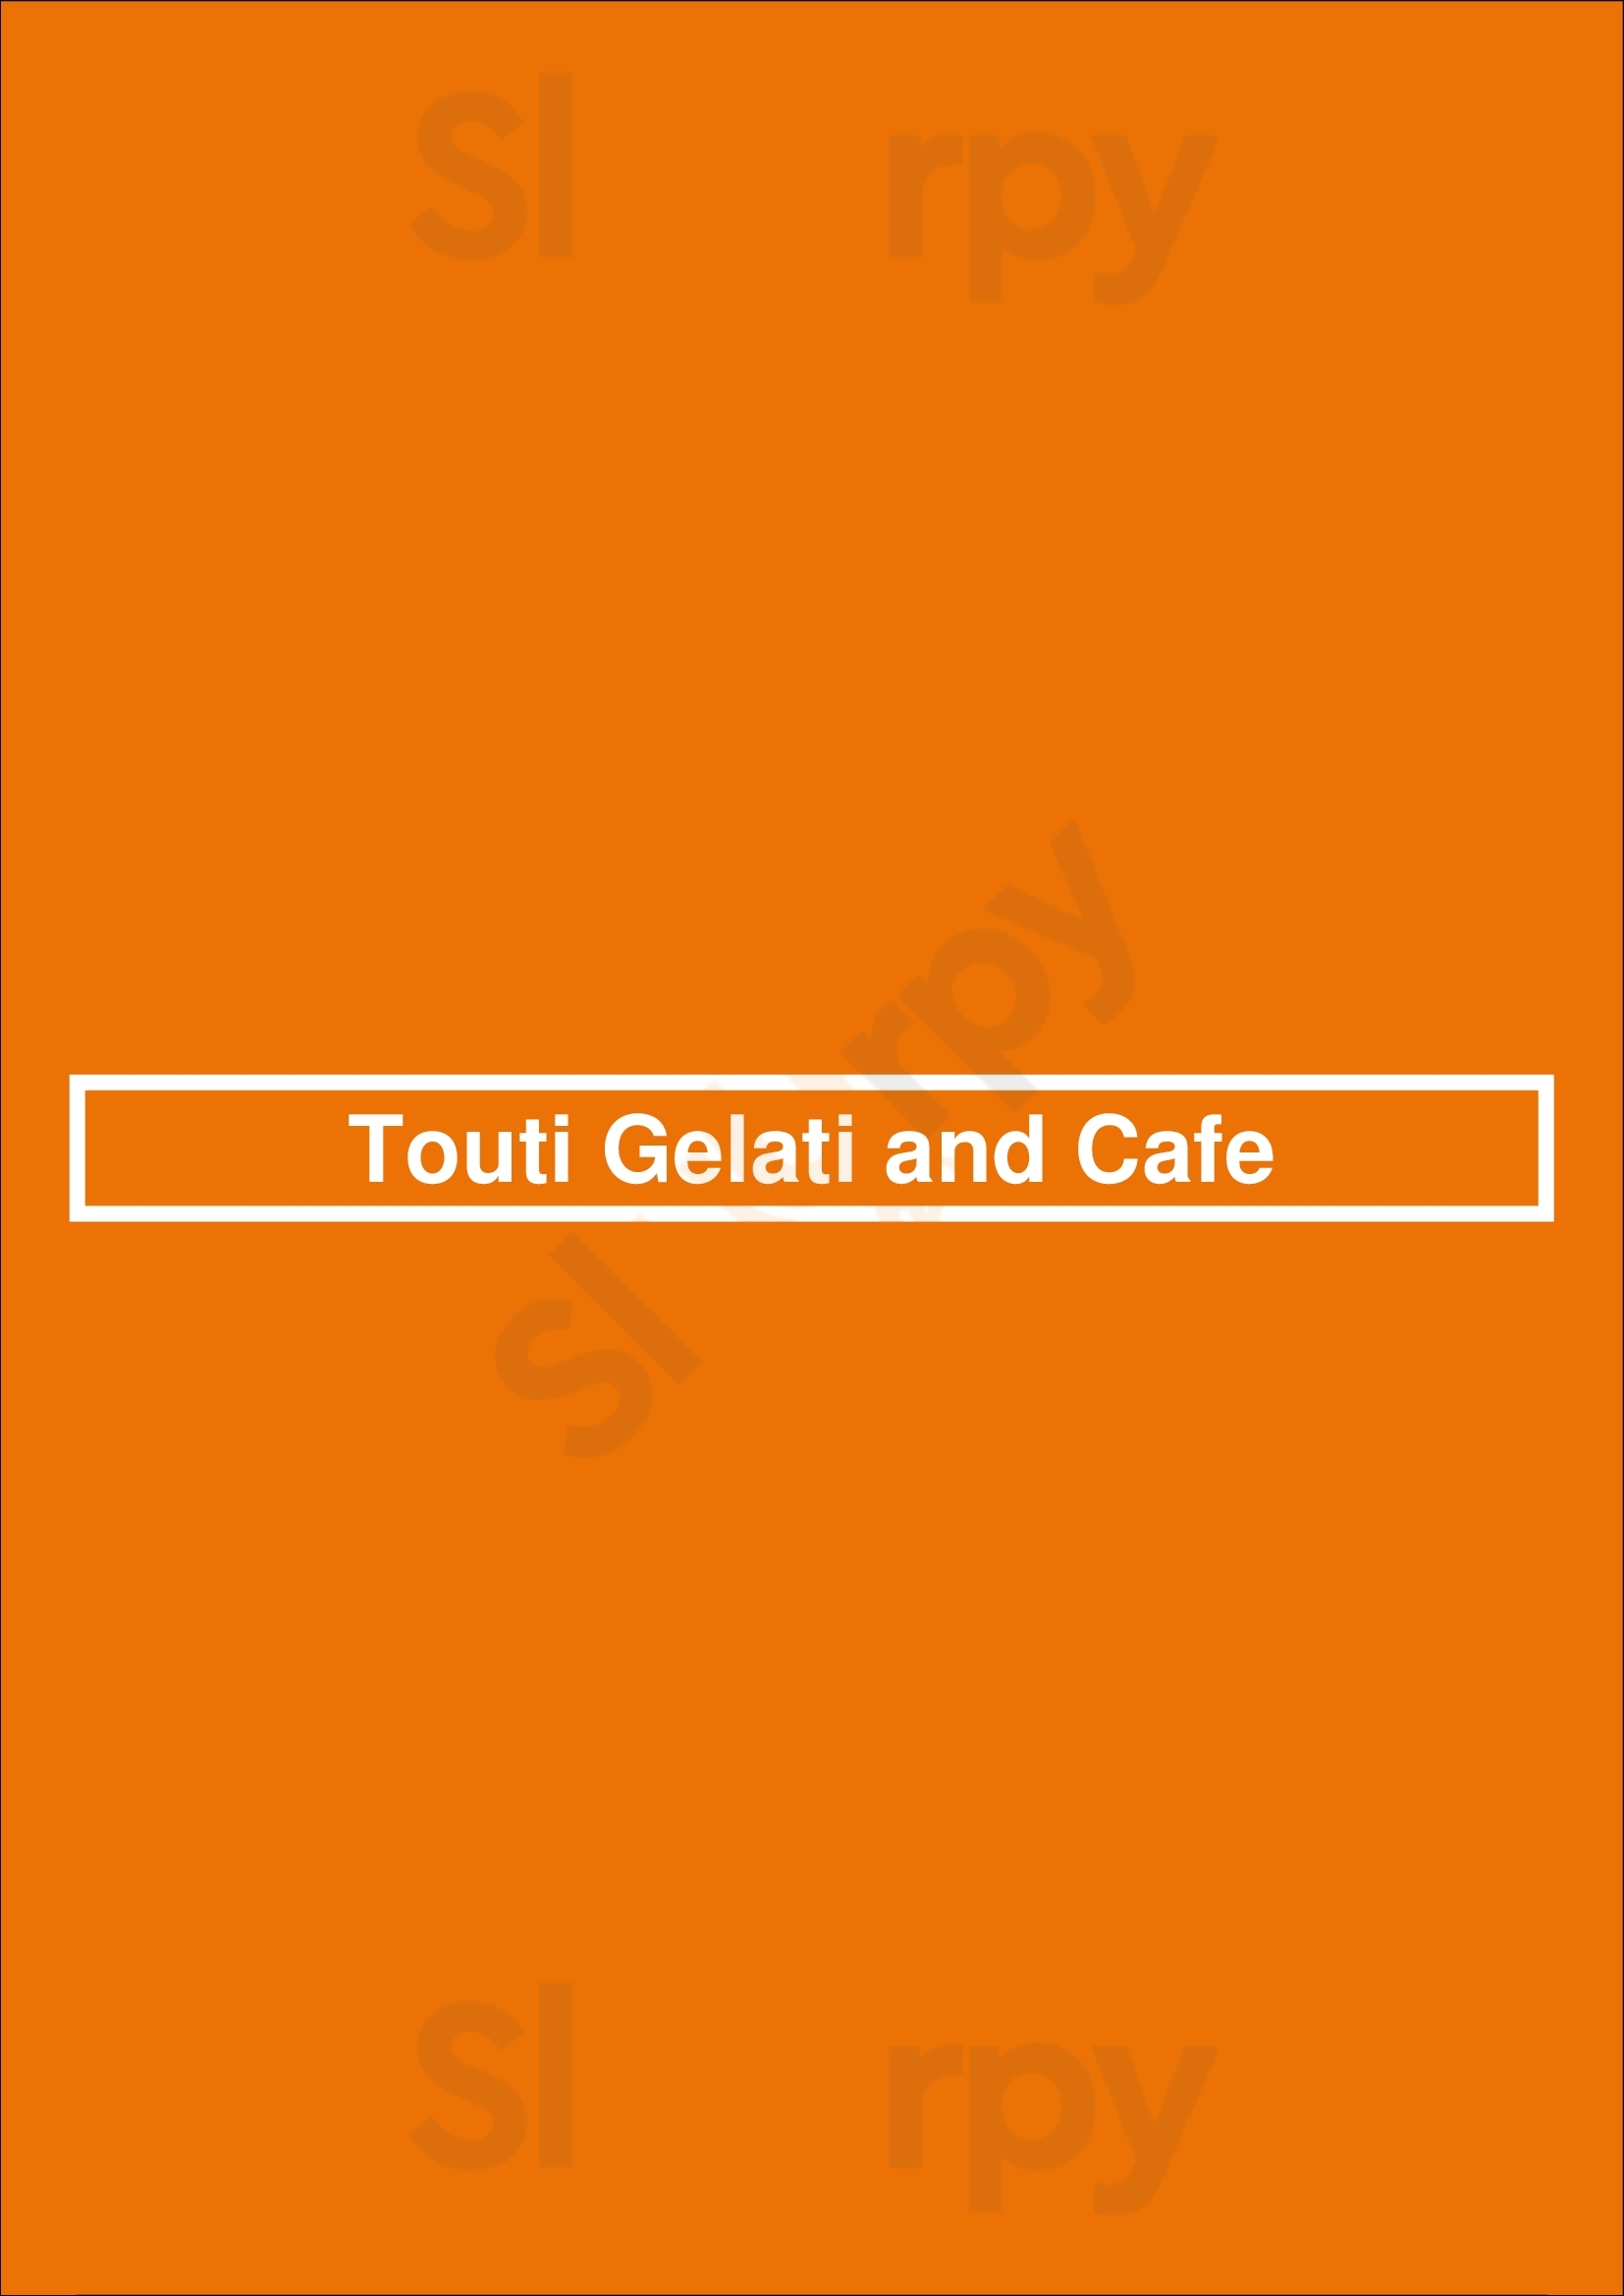 Touti Gelati And Cafe Toronto Menu - 1